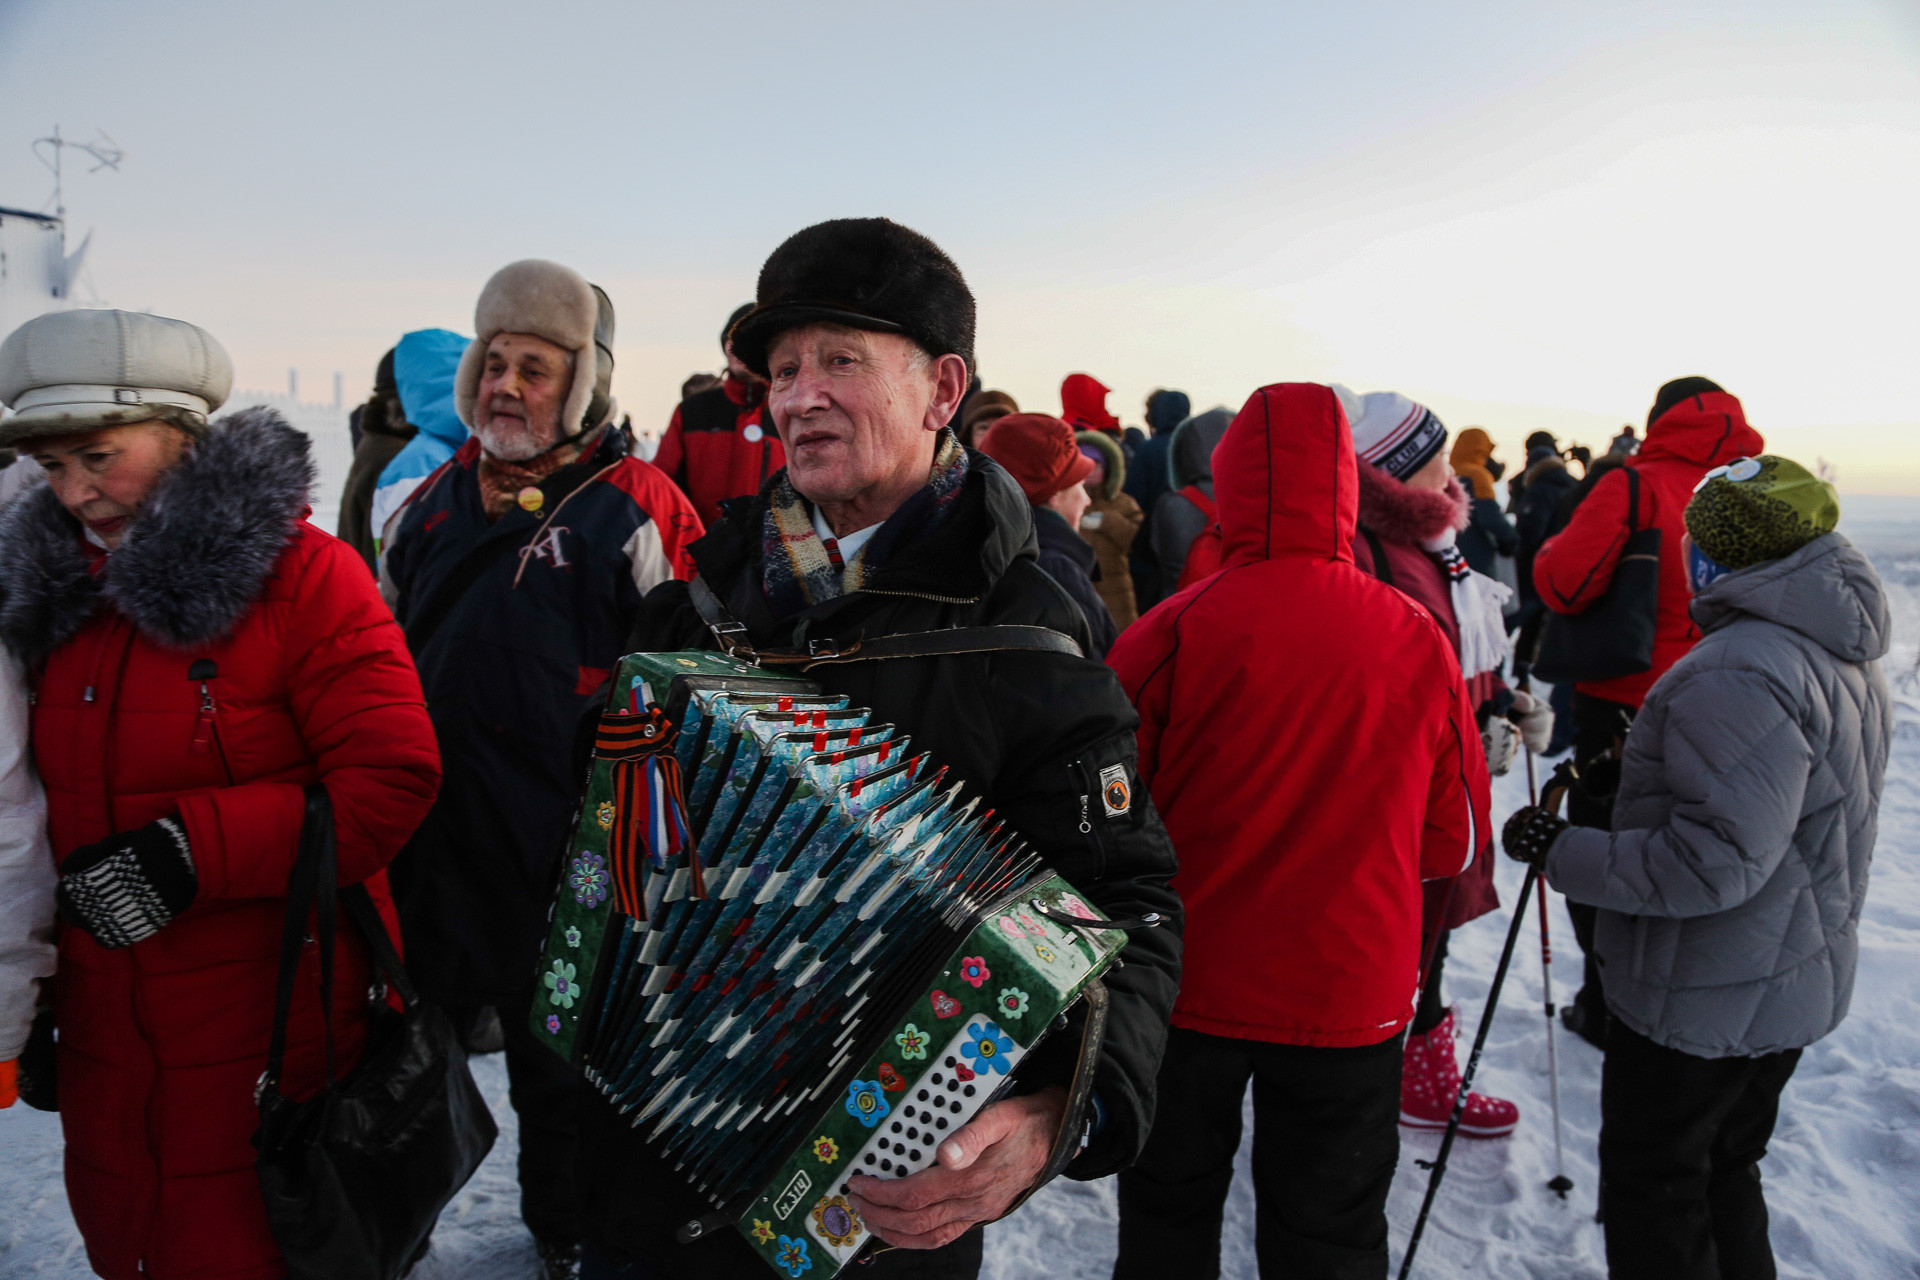 Karena matahari tak terbit di Murmansk selama beberapa minggu, menyambut kehadirannya dengan musik terlihat masuk akal.